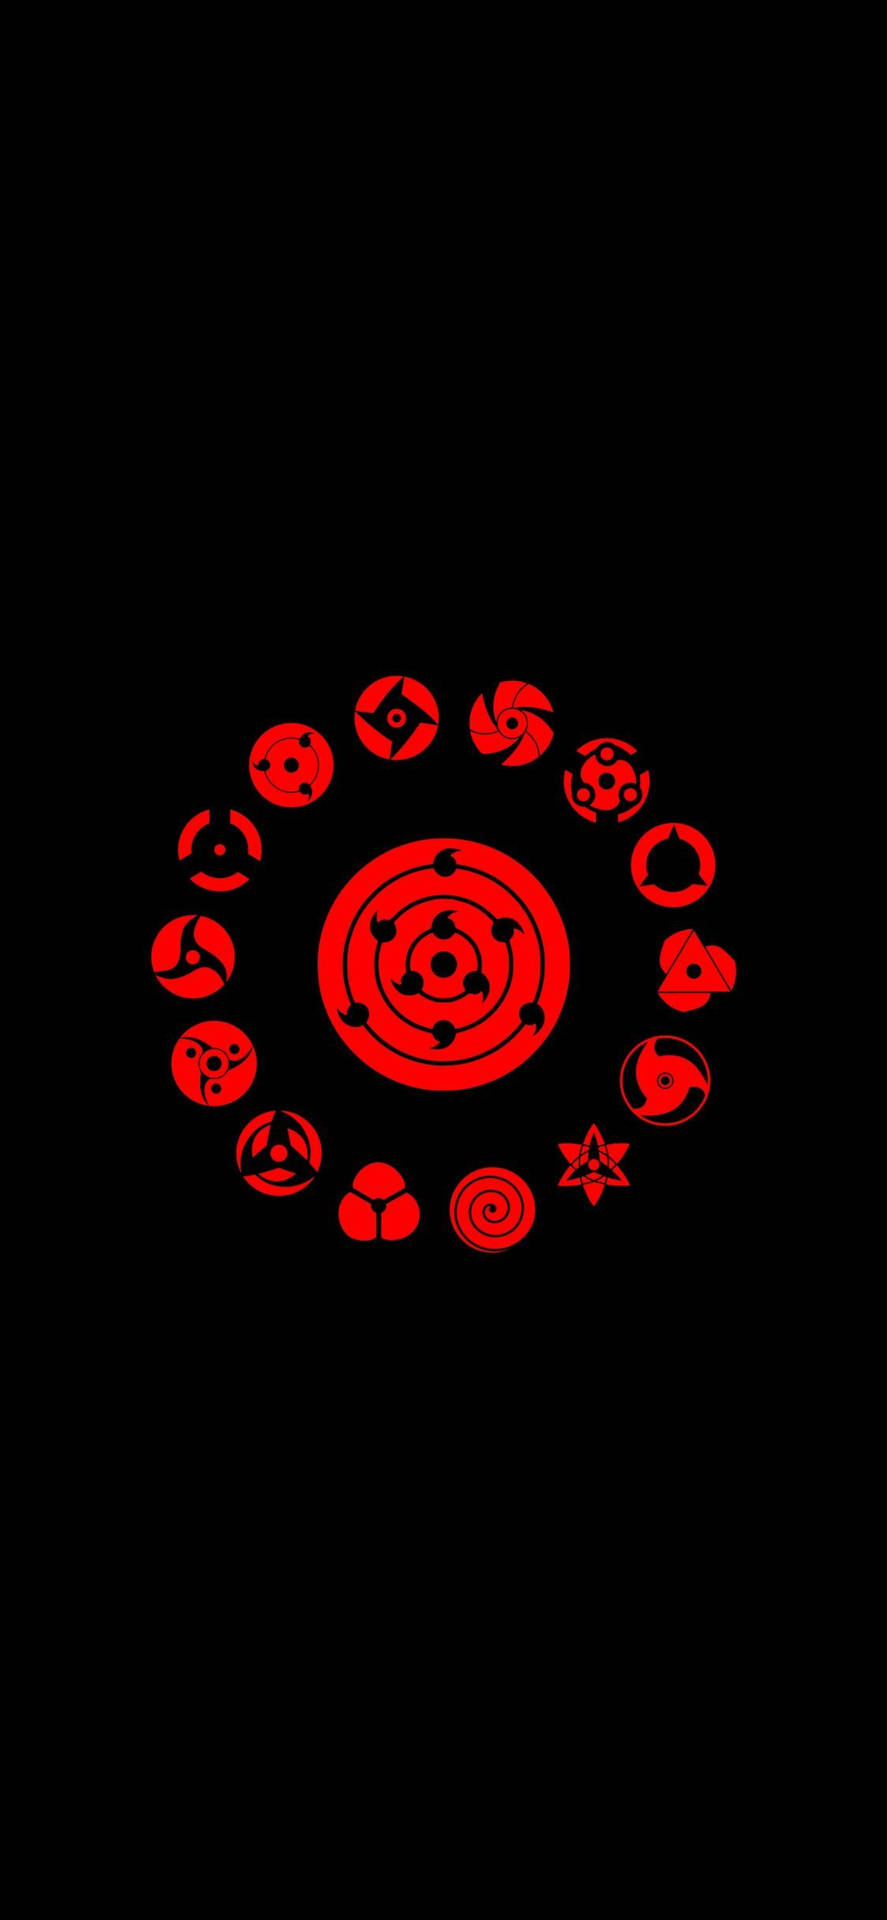 Naruto Sharingan Symbols IPhone Wallpaper